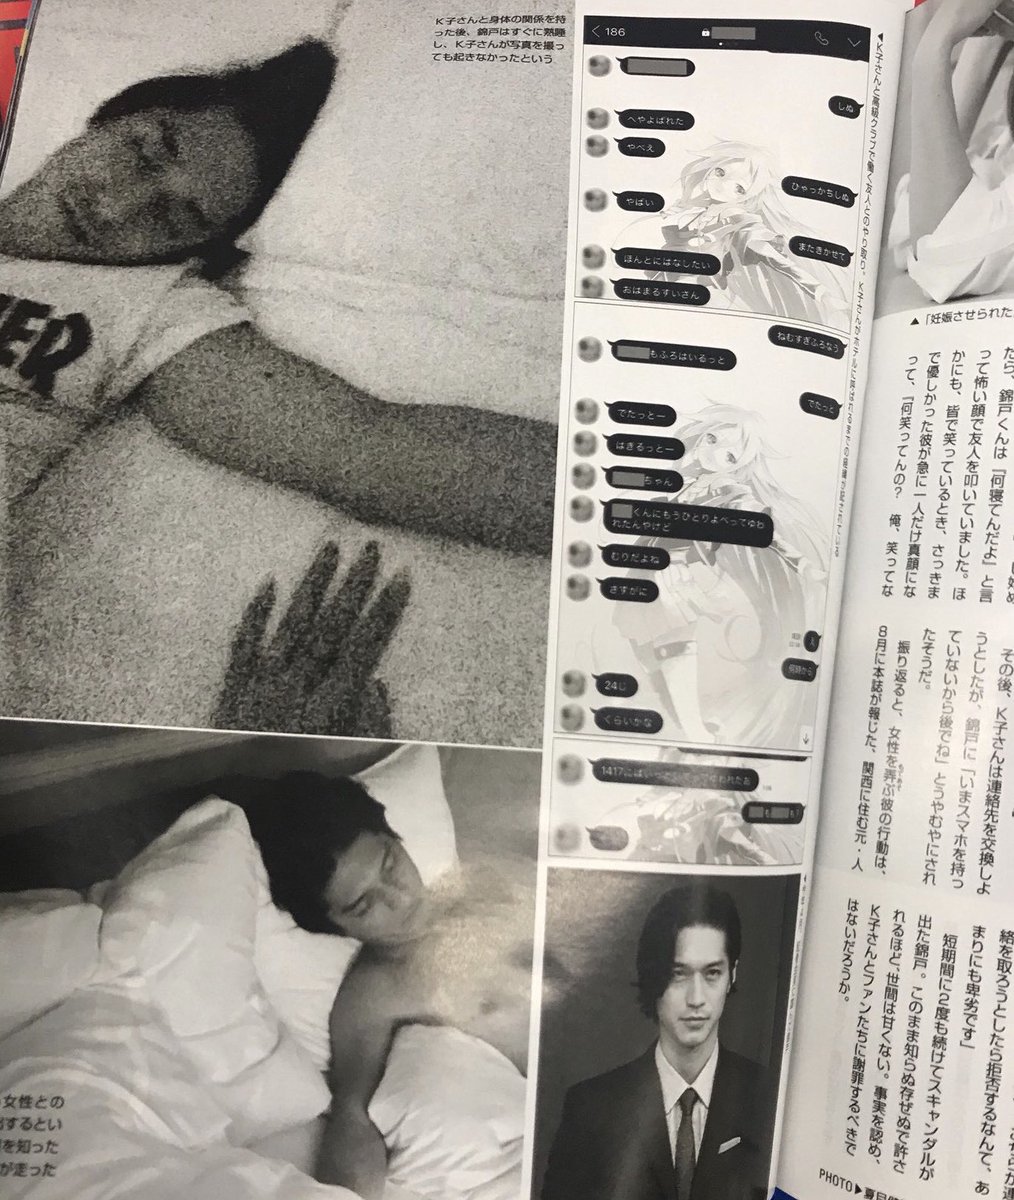 錦戸亮のベッド写真フライデー 不倫の次は妊娠疑惑 週刊誌掲載画像まとめ